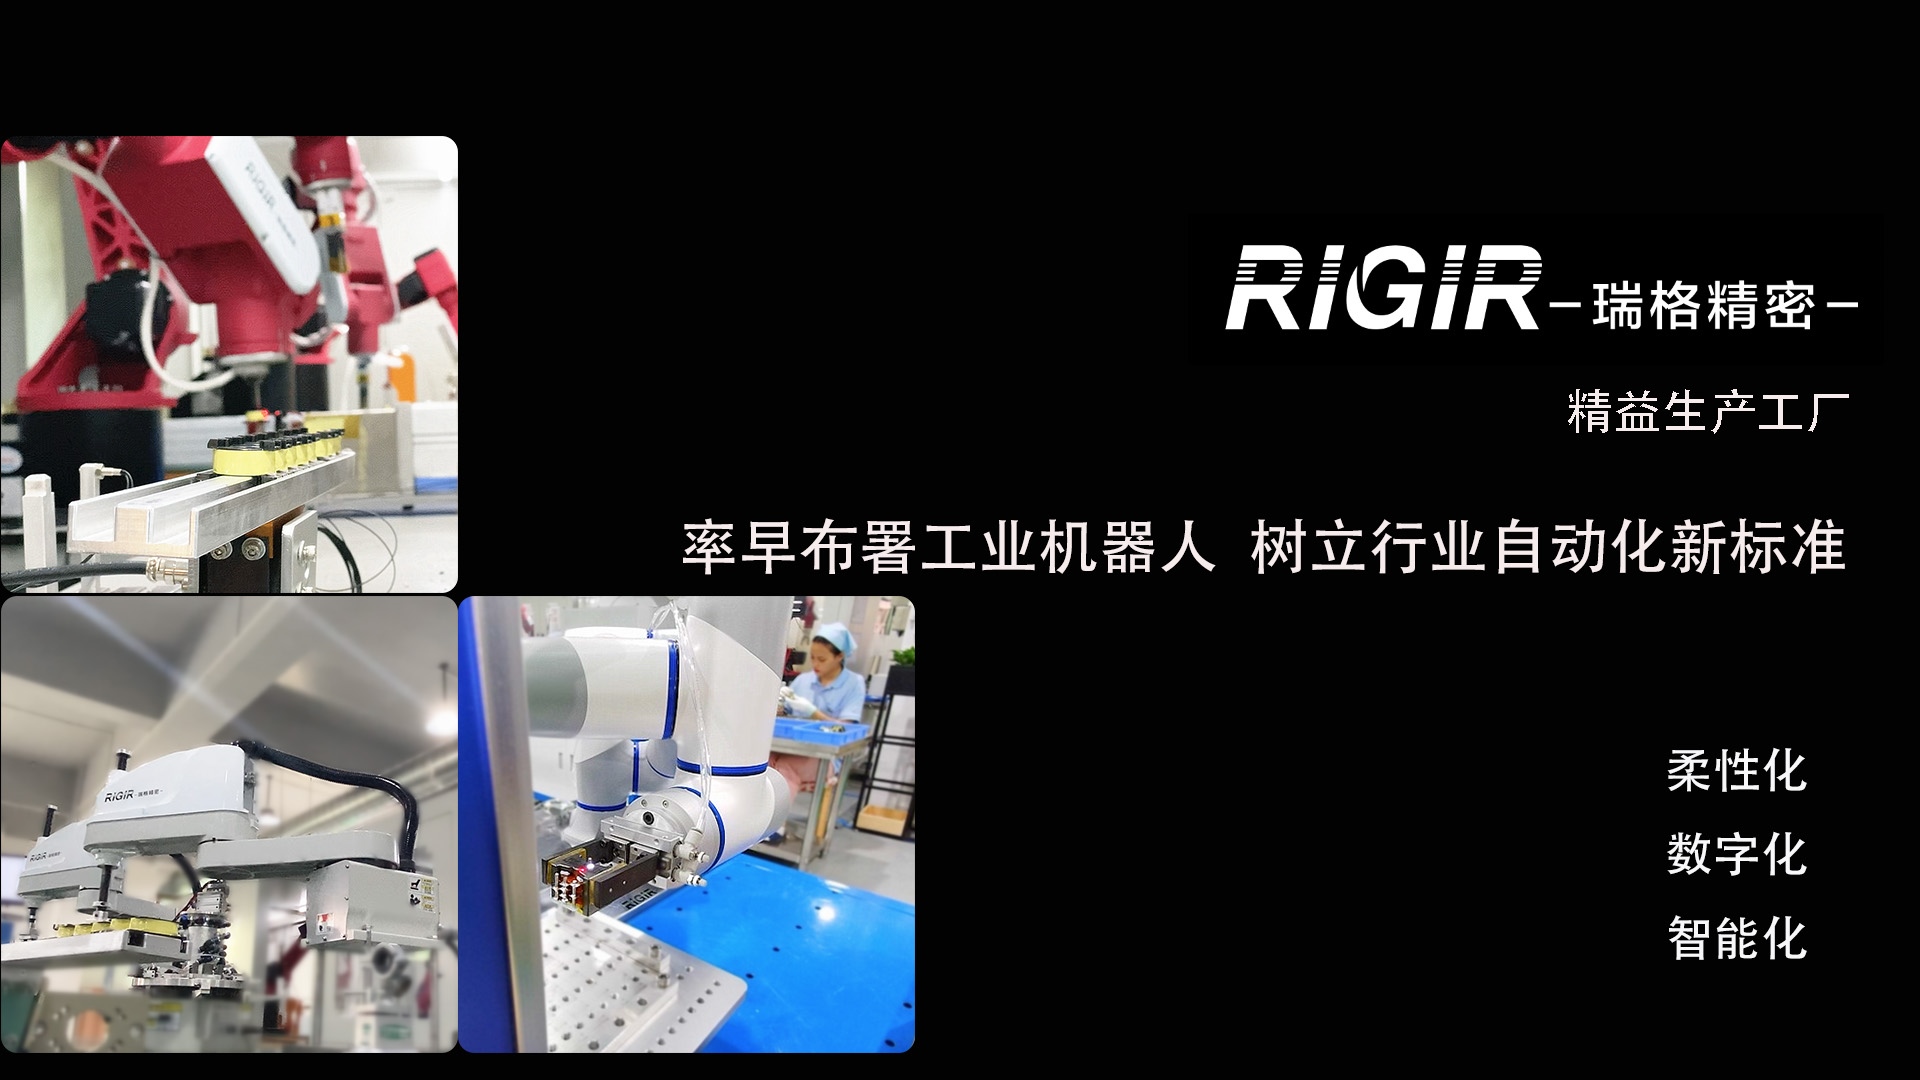 RIGIR瑞格精密平板变压器产线布署工业机器人开行业先河